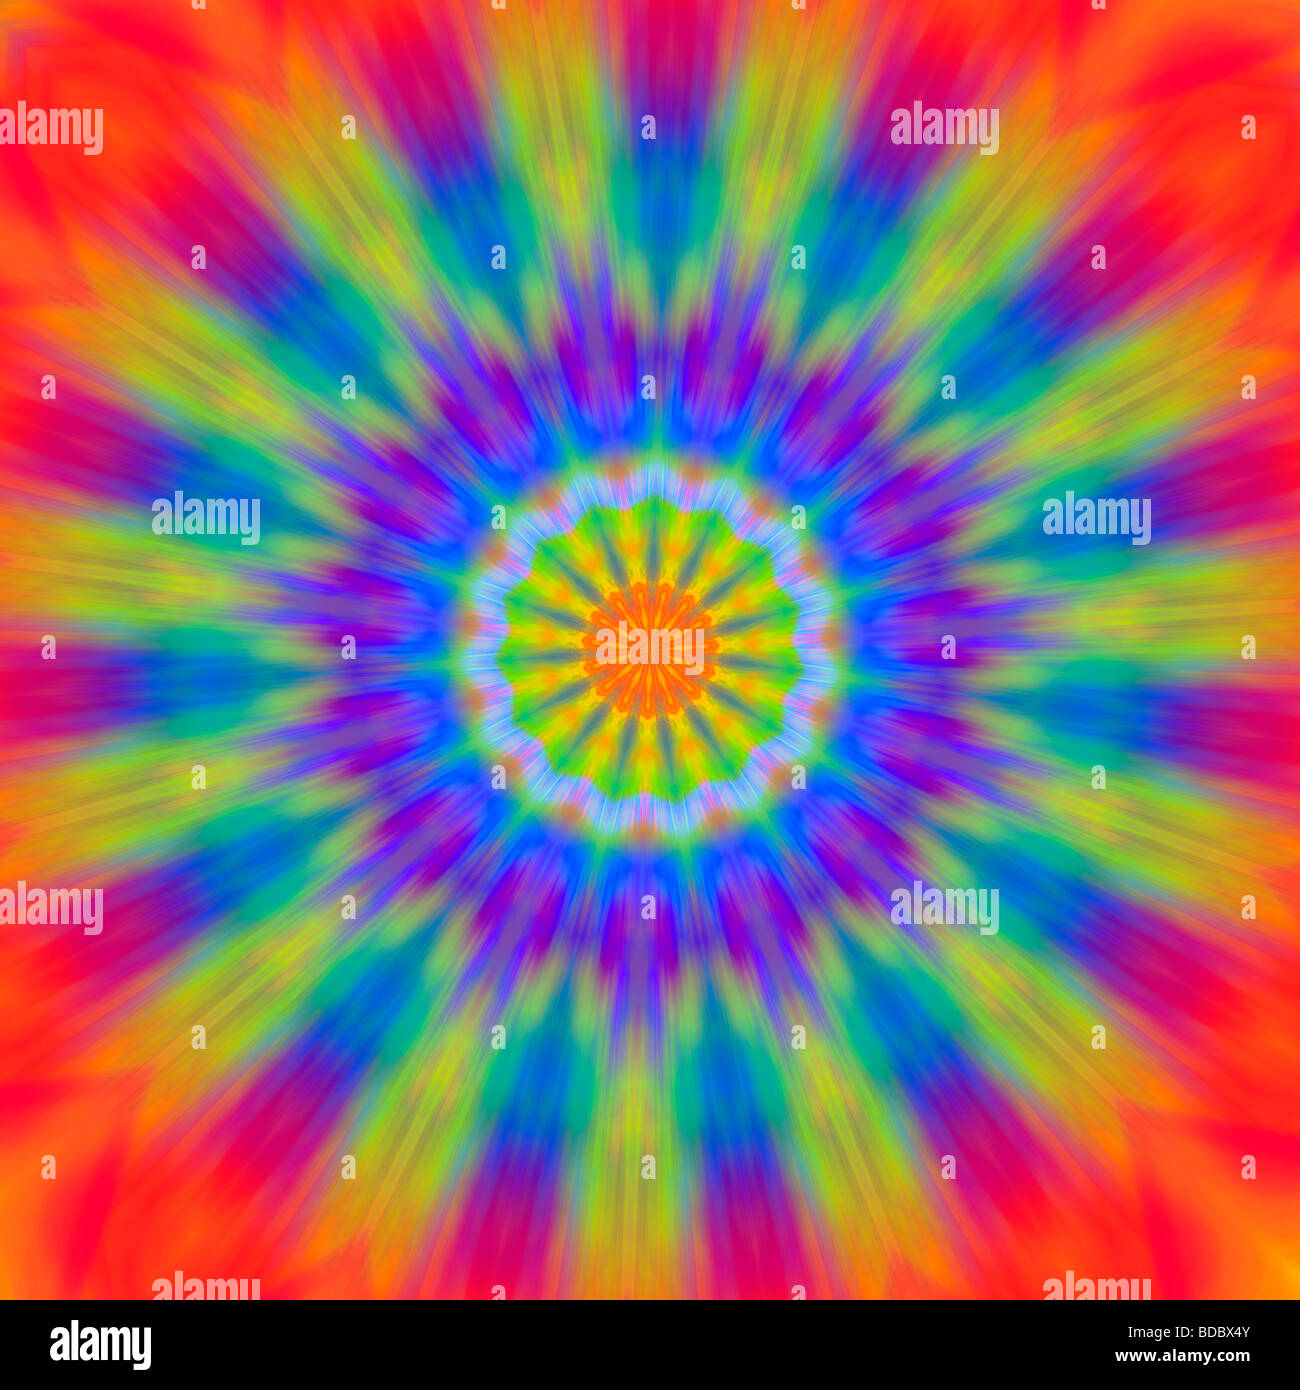 Psychedelisch Sonne - eine bunte abstrakte Darstellung der Sonne Stockfoto